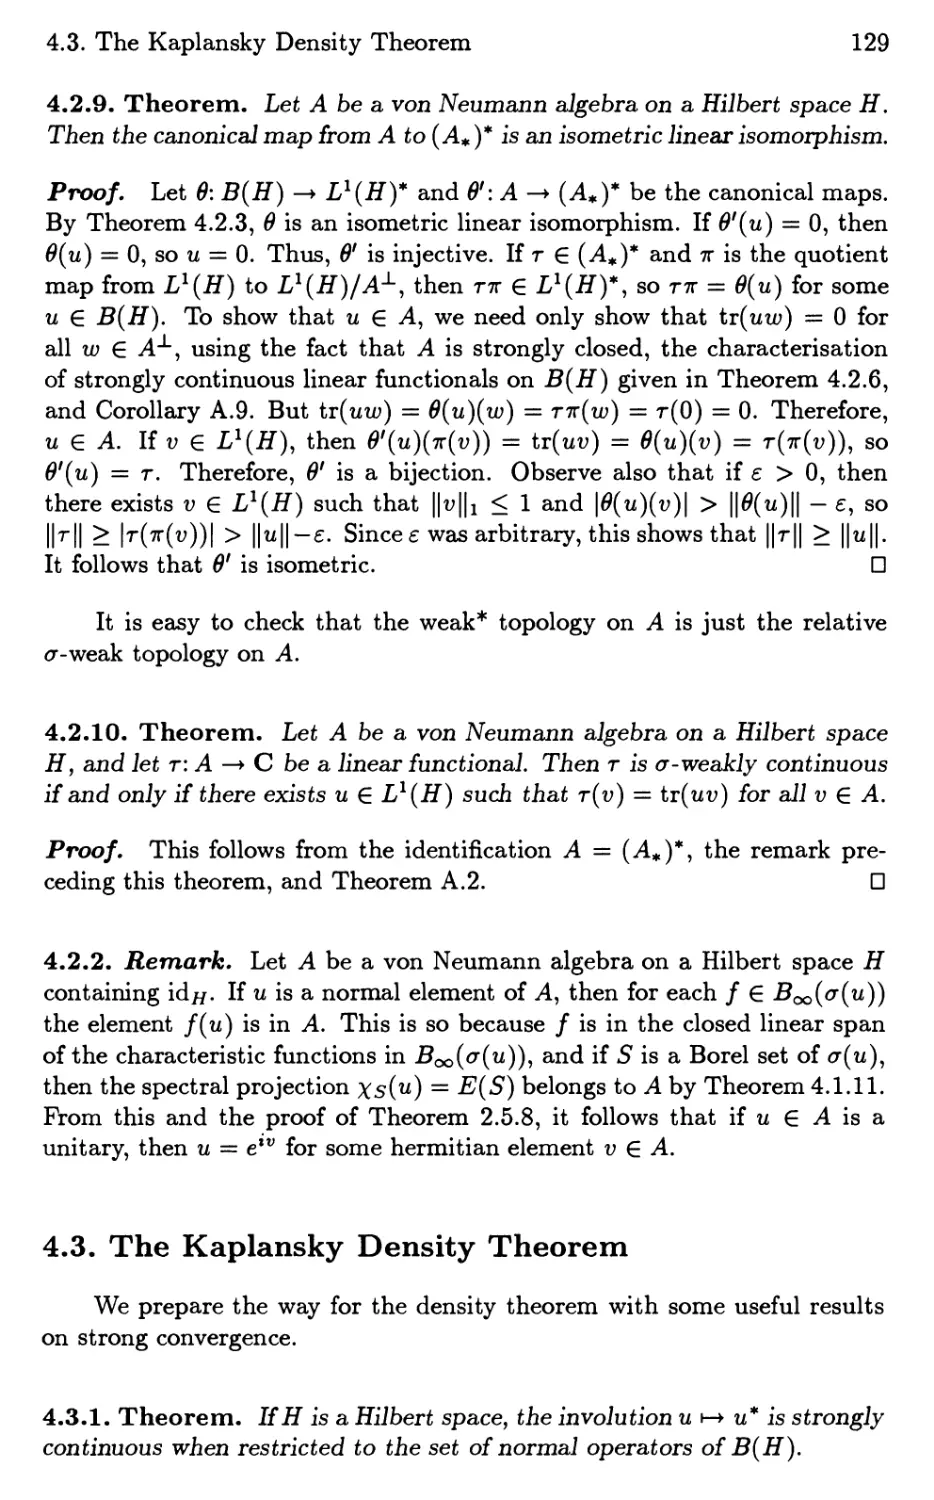 4.3. The Kaplansky Density Theorem